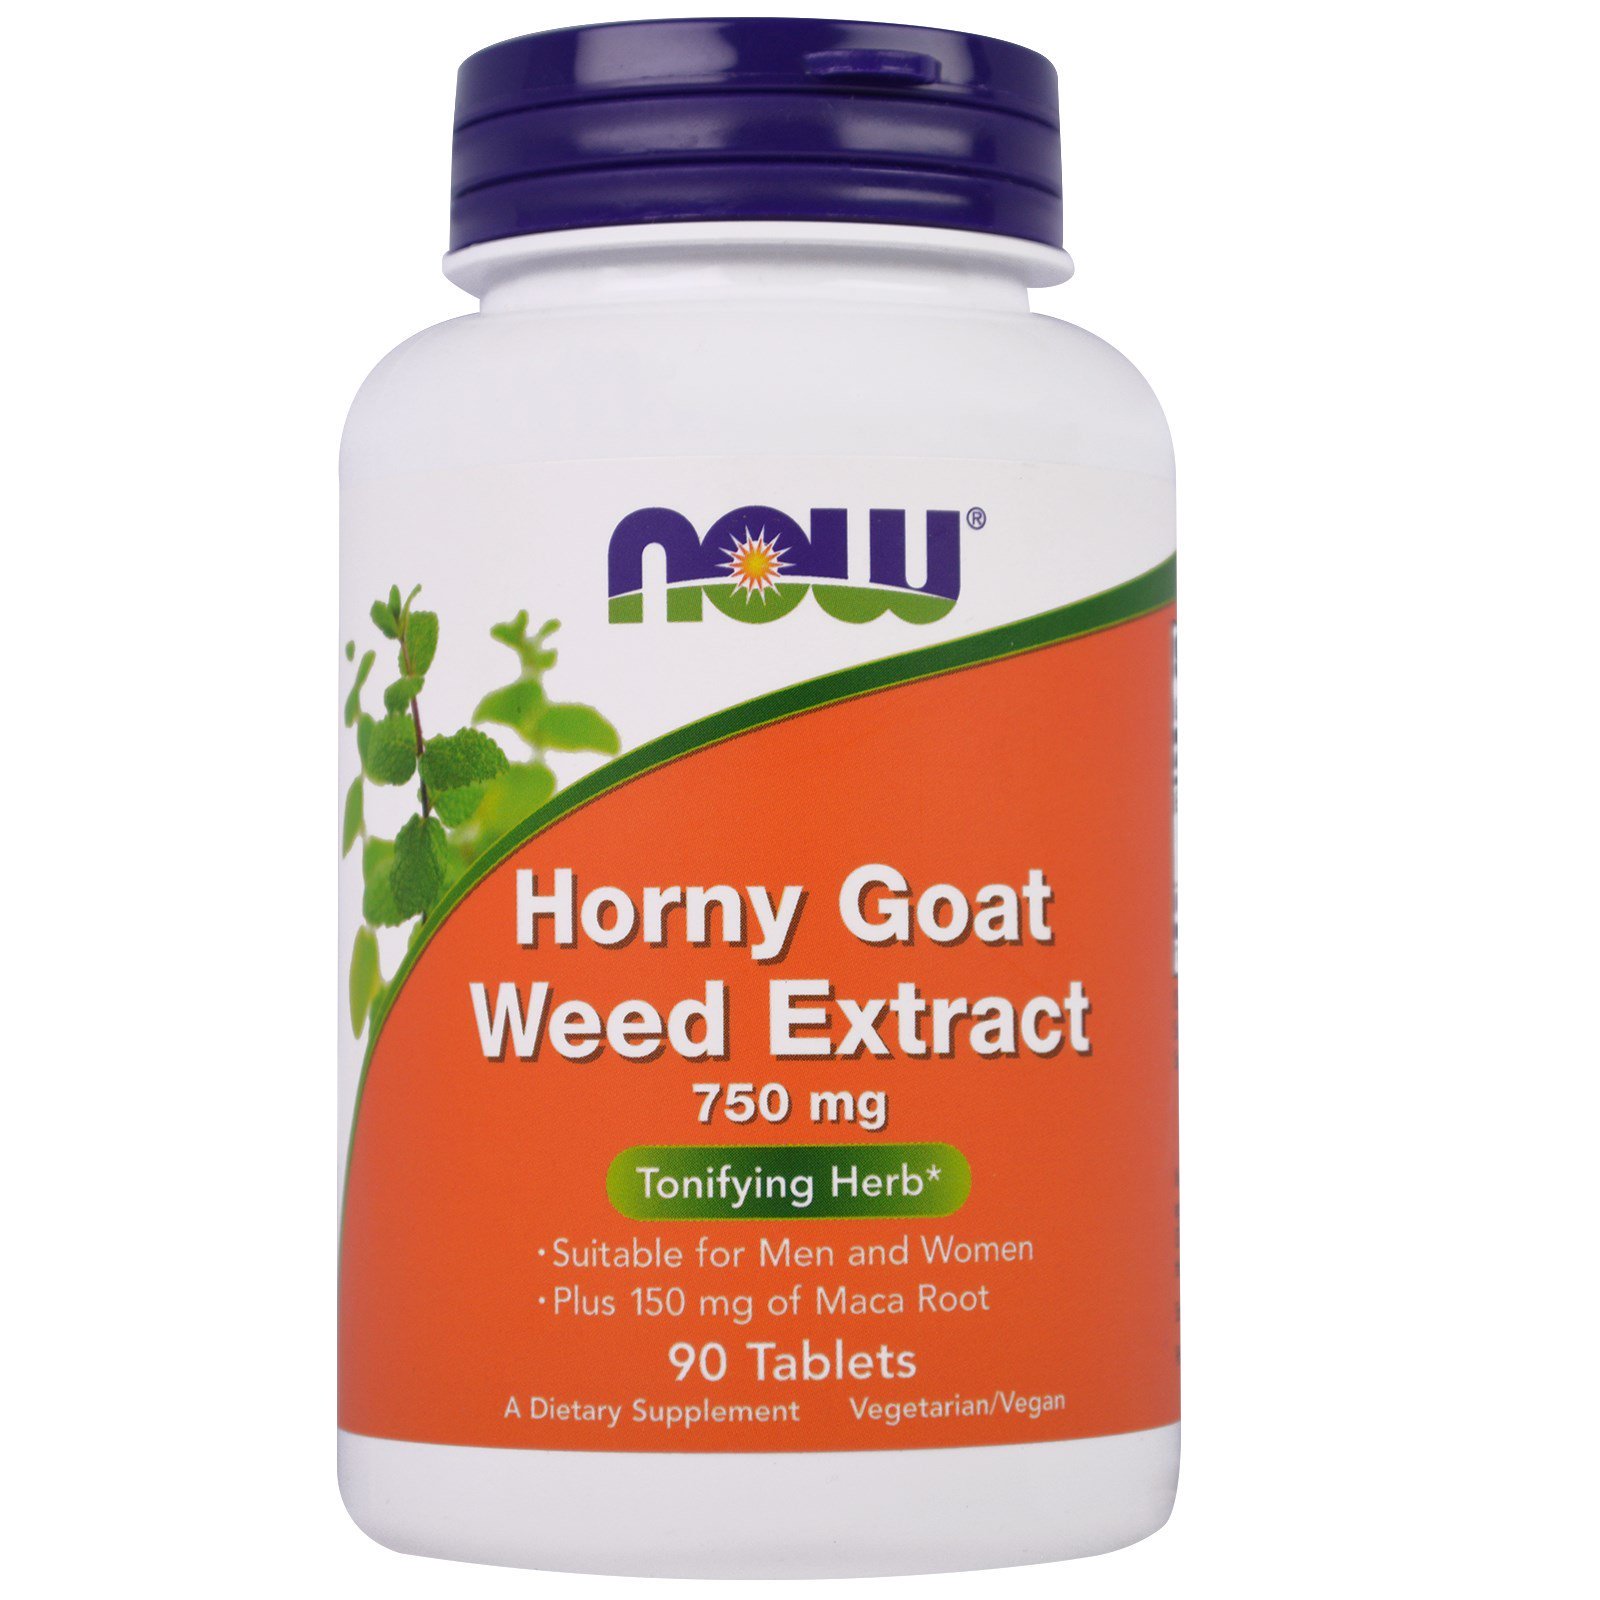 Horny Goat Weed Extract, Горянка, Икариин, Эпимедиум Экстракт 750 мг - 90 таблеток